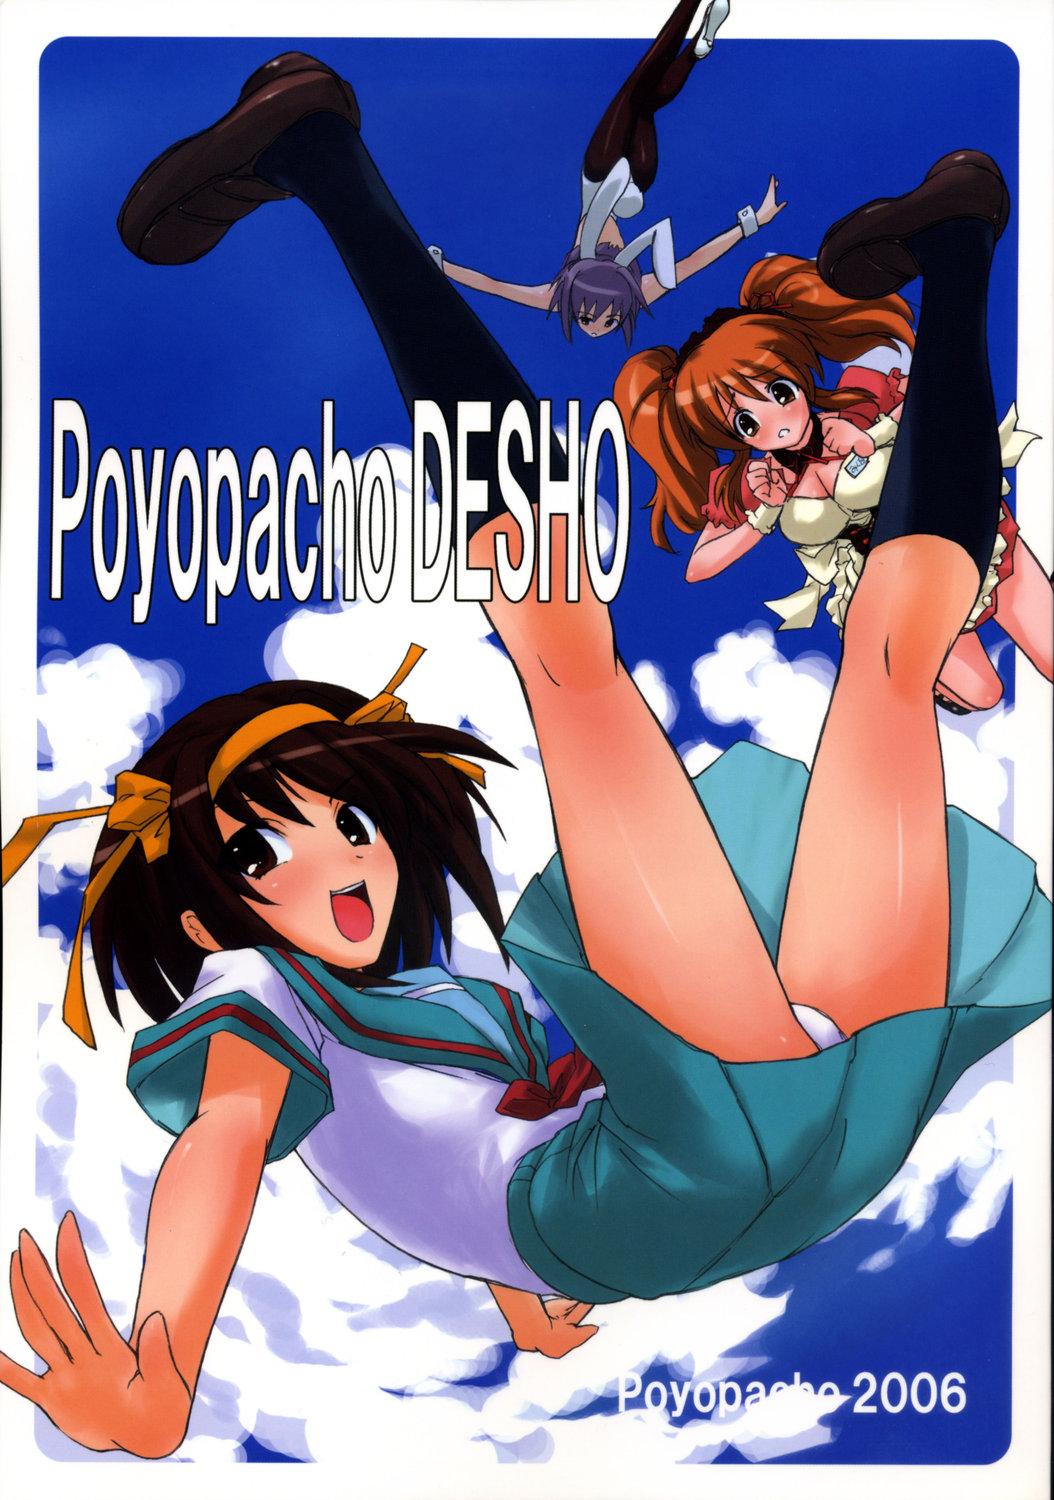 Poyopacho DESHO 0